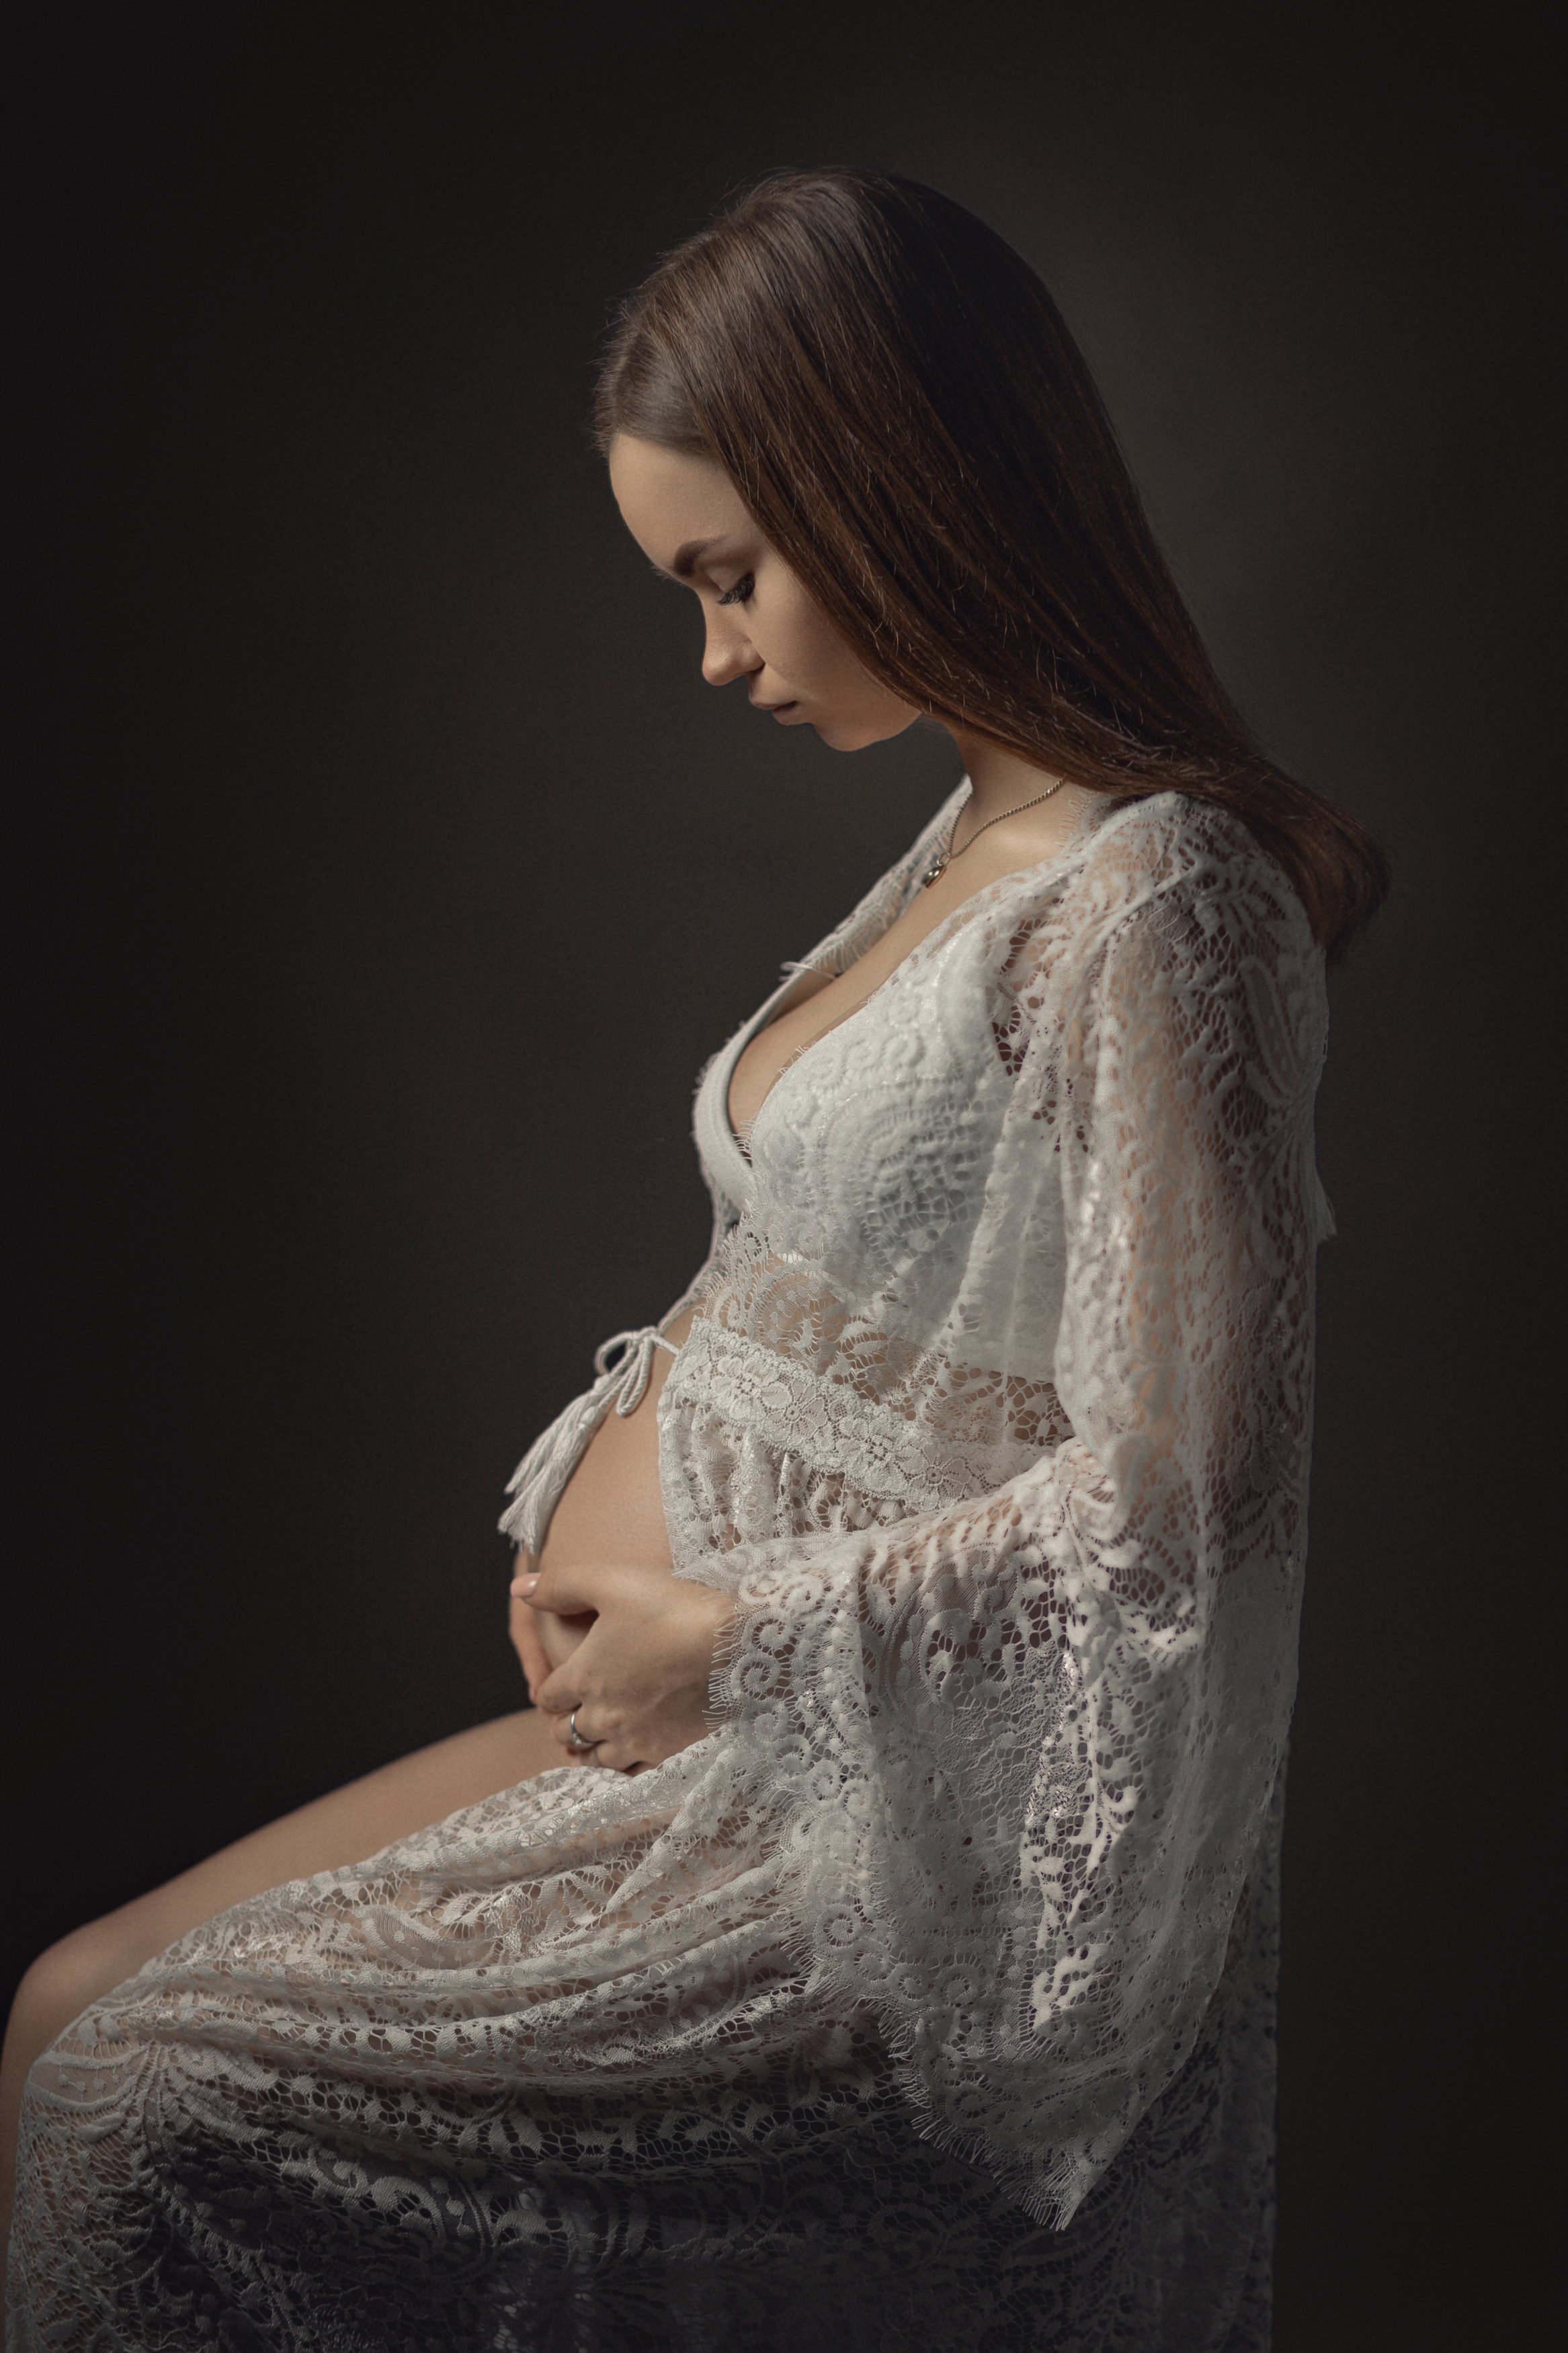 портрет, девушка, беременность, женский портрет, portrait, pregnant, girl portrait, Aleksey Sologubov